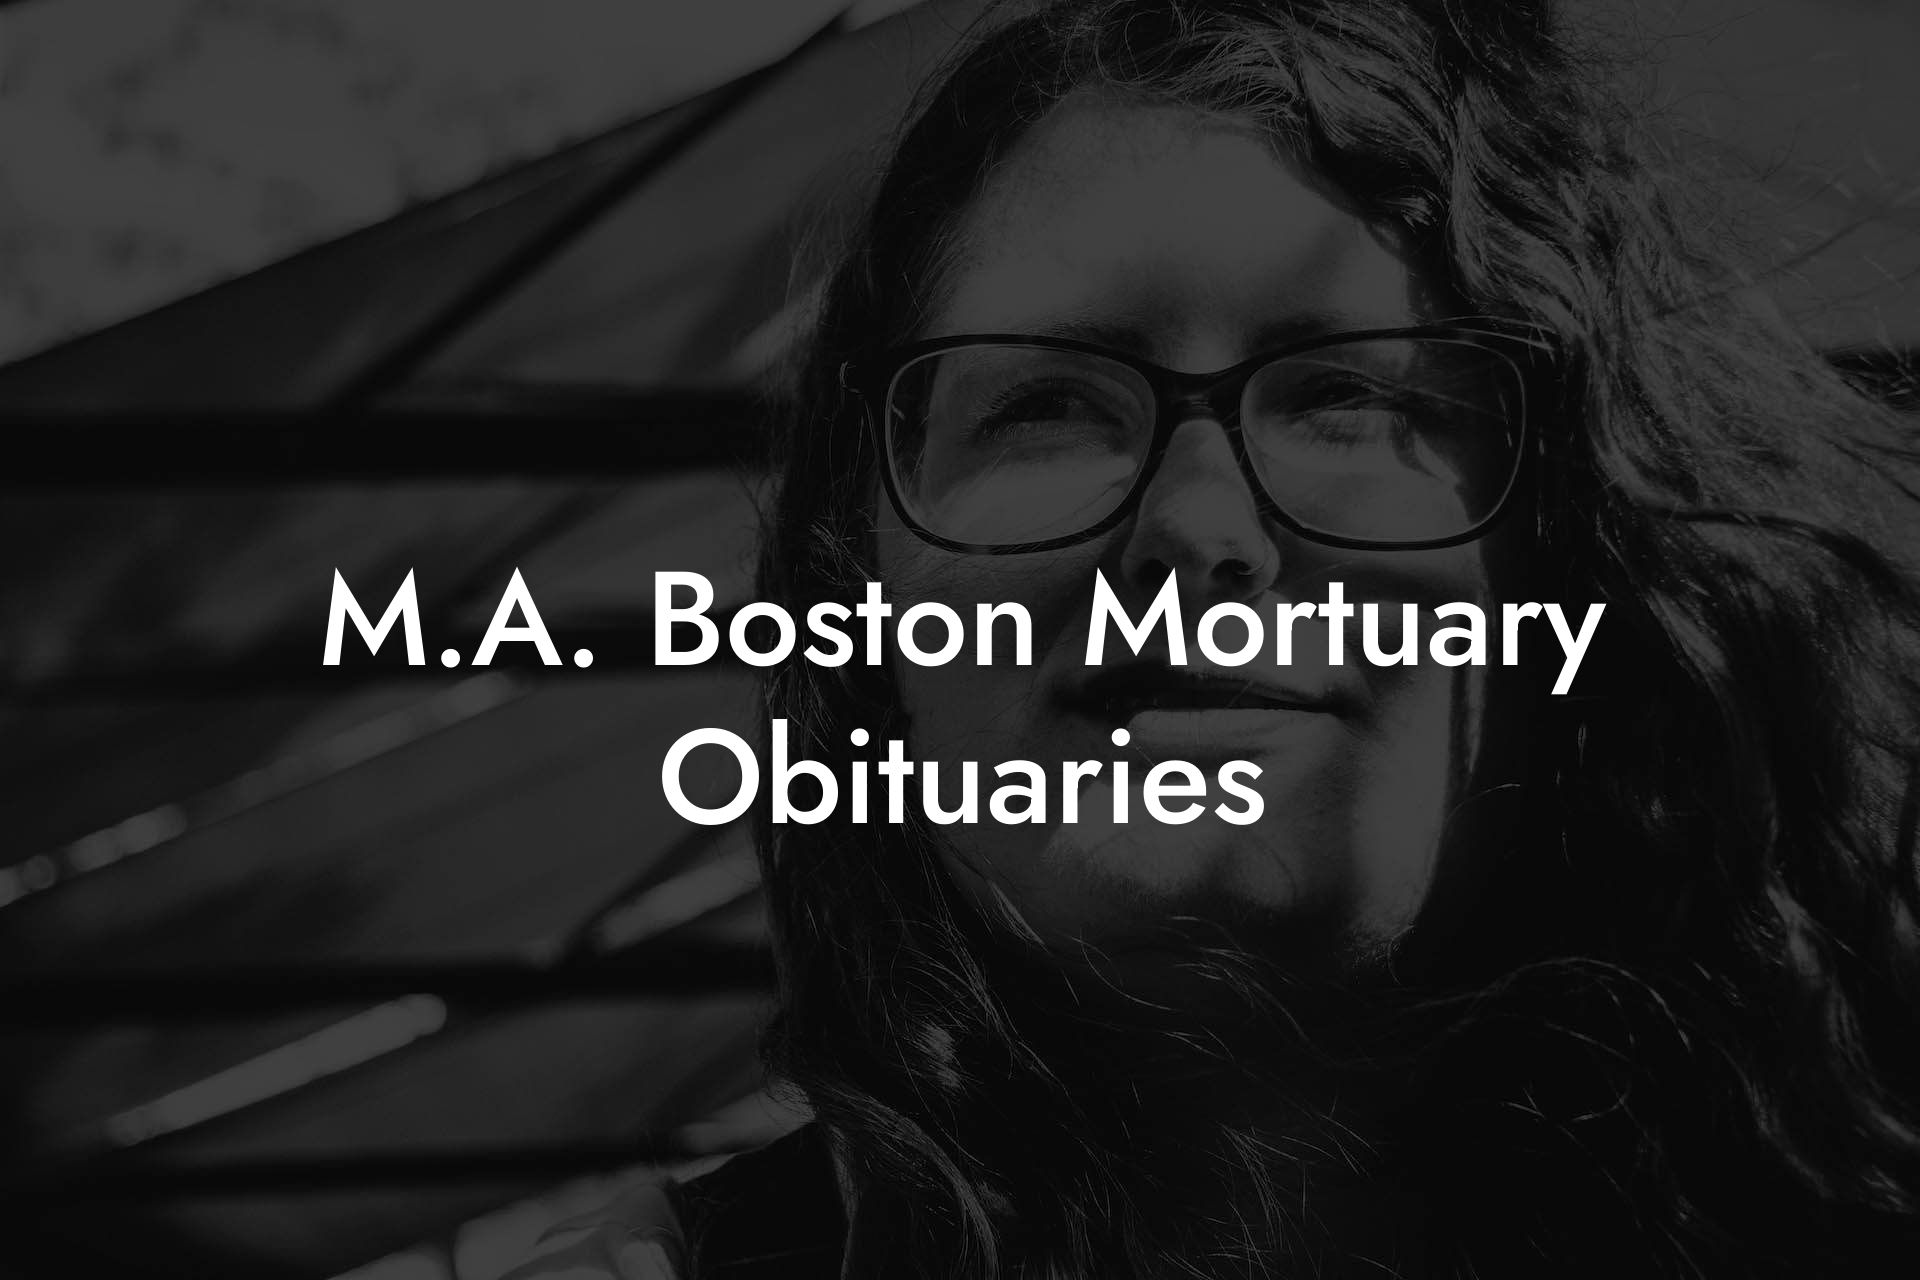 M.A. Boston Mortuary Obituaries